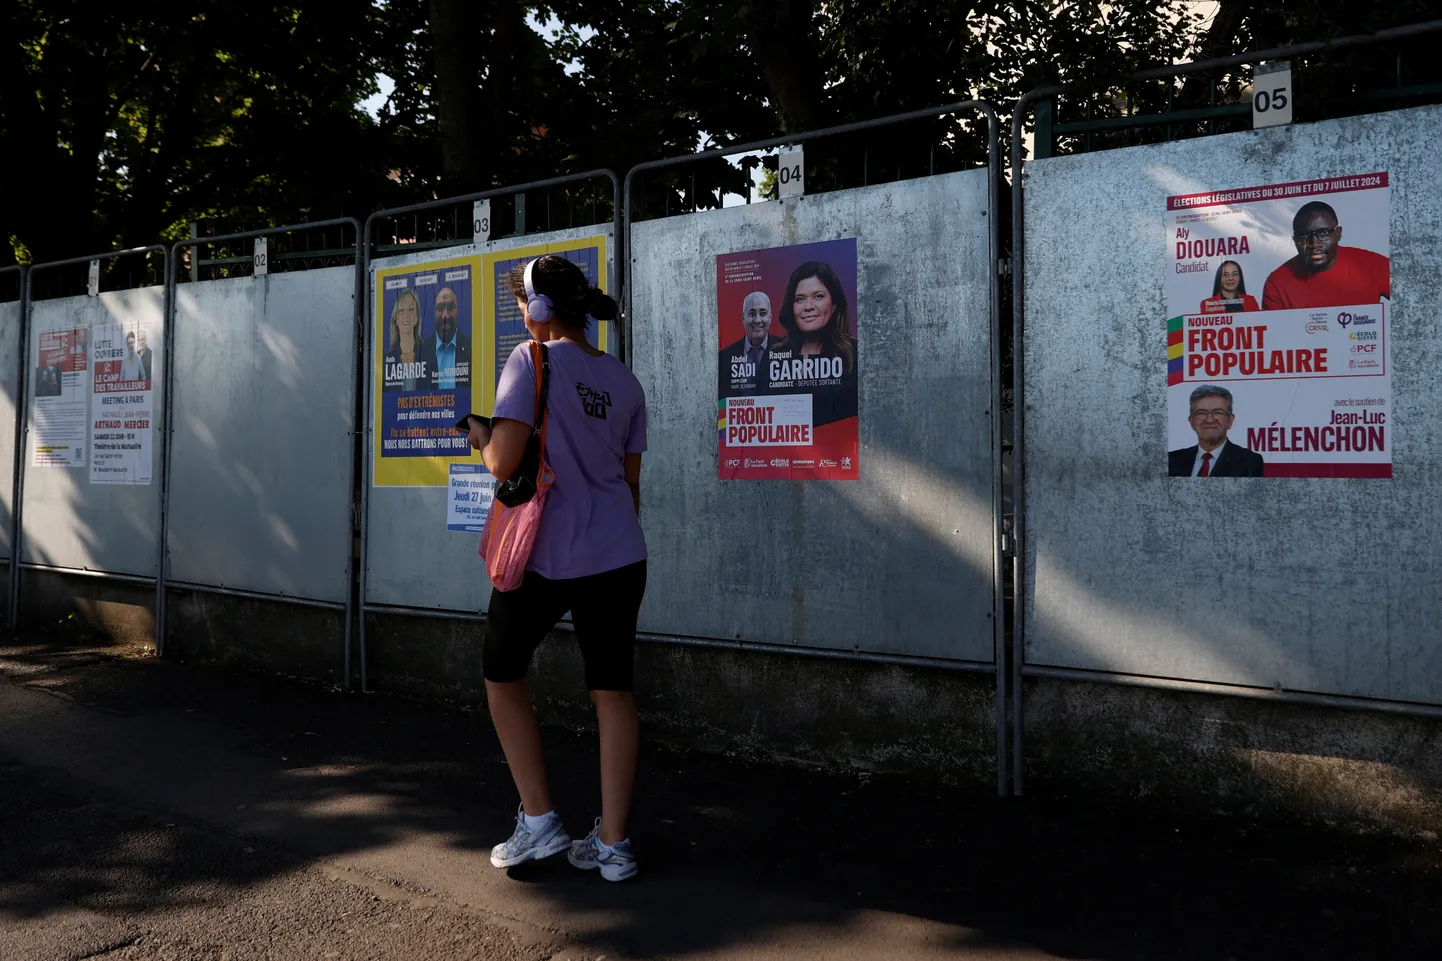 Prantsuse ennetähtaegsete parlamendivalimiste kampaaniaplakatid.